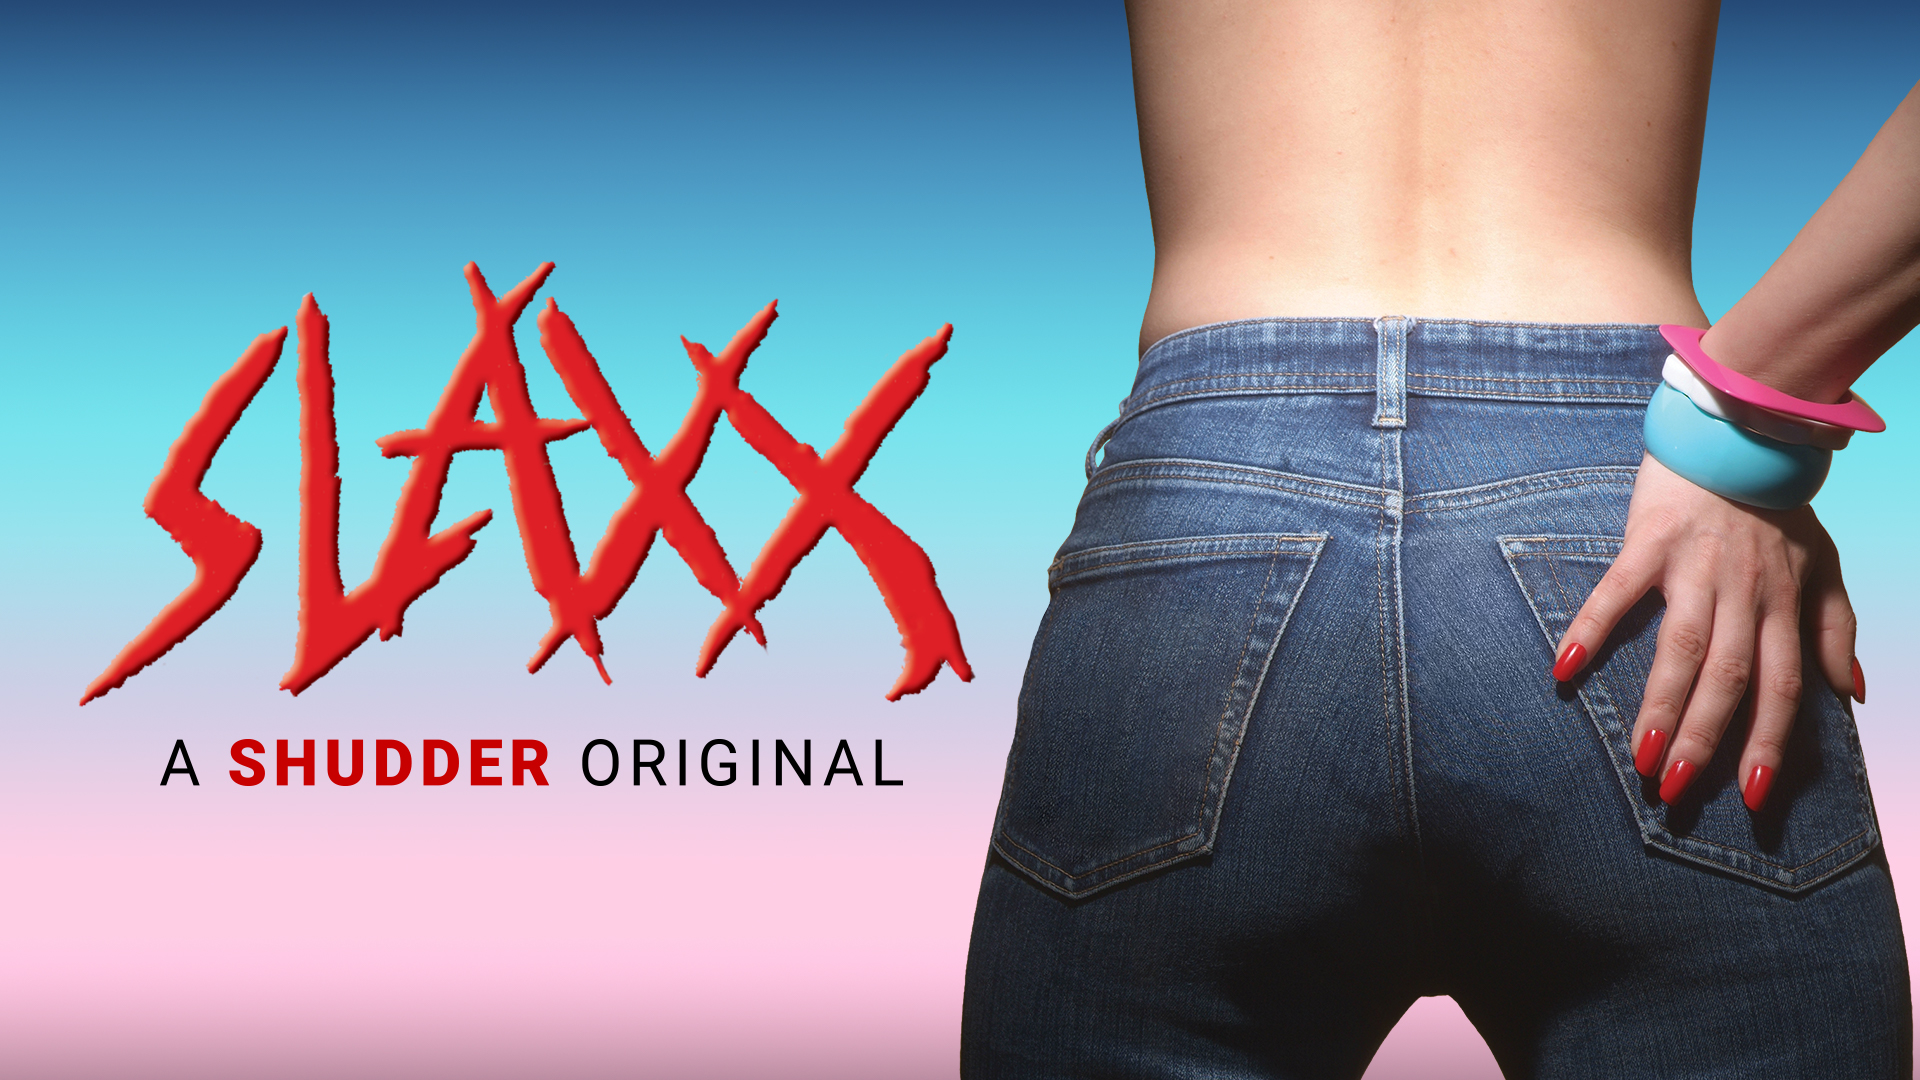 Slaxx - A Shudder Original